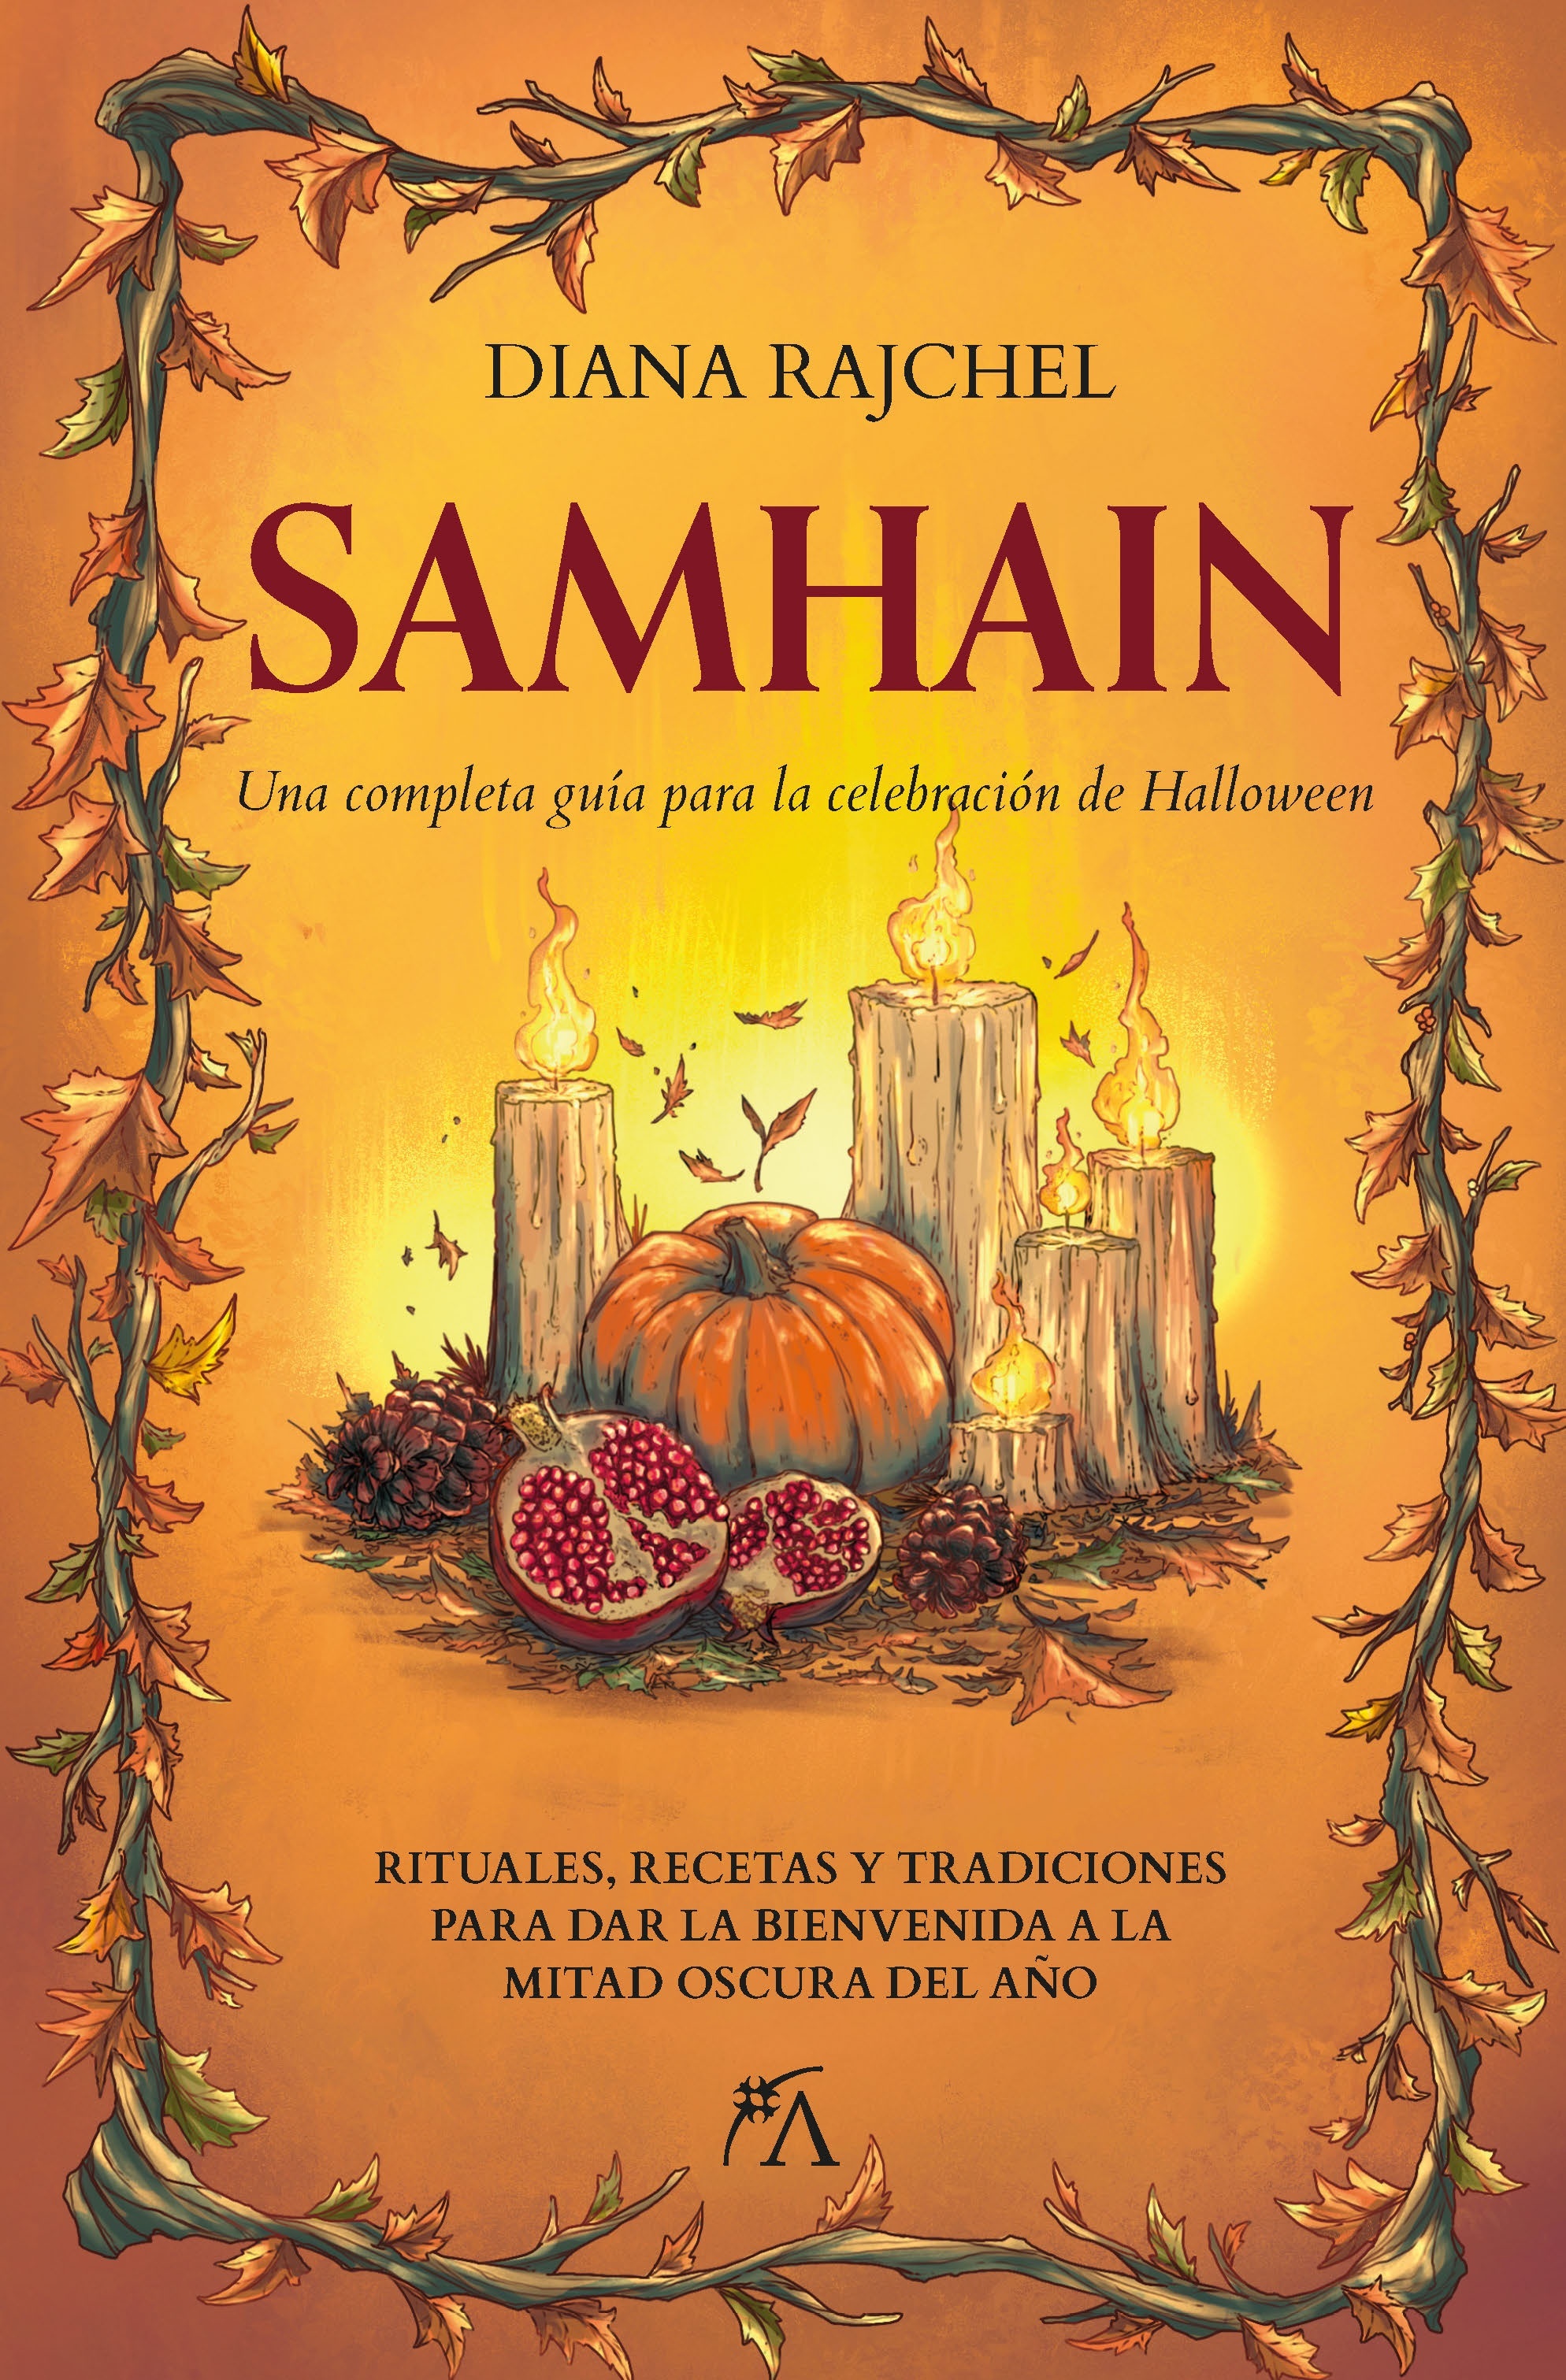 Samhain "Una completa guía para la celebración de Halloween"